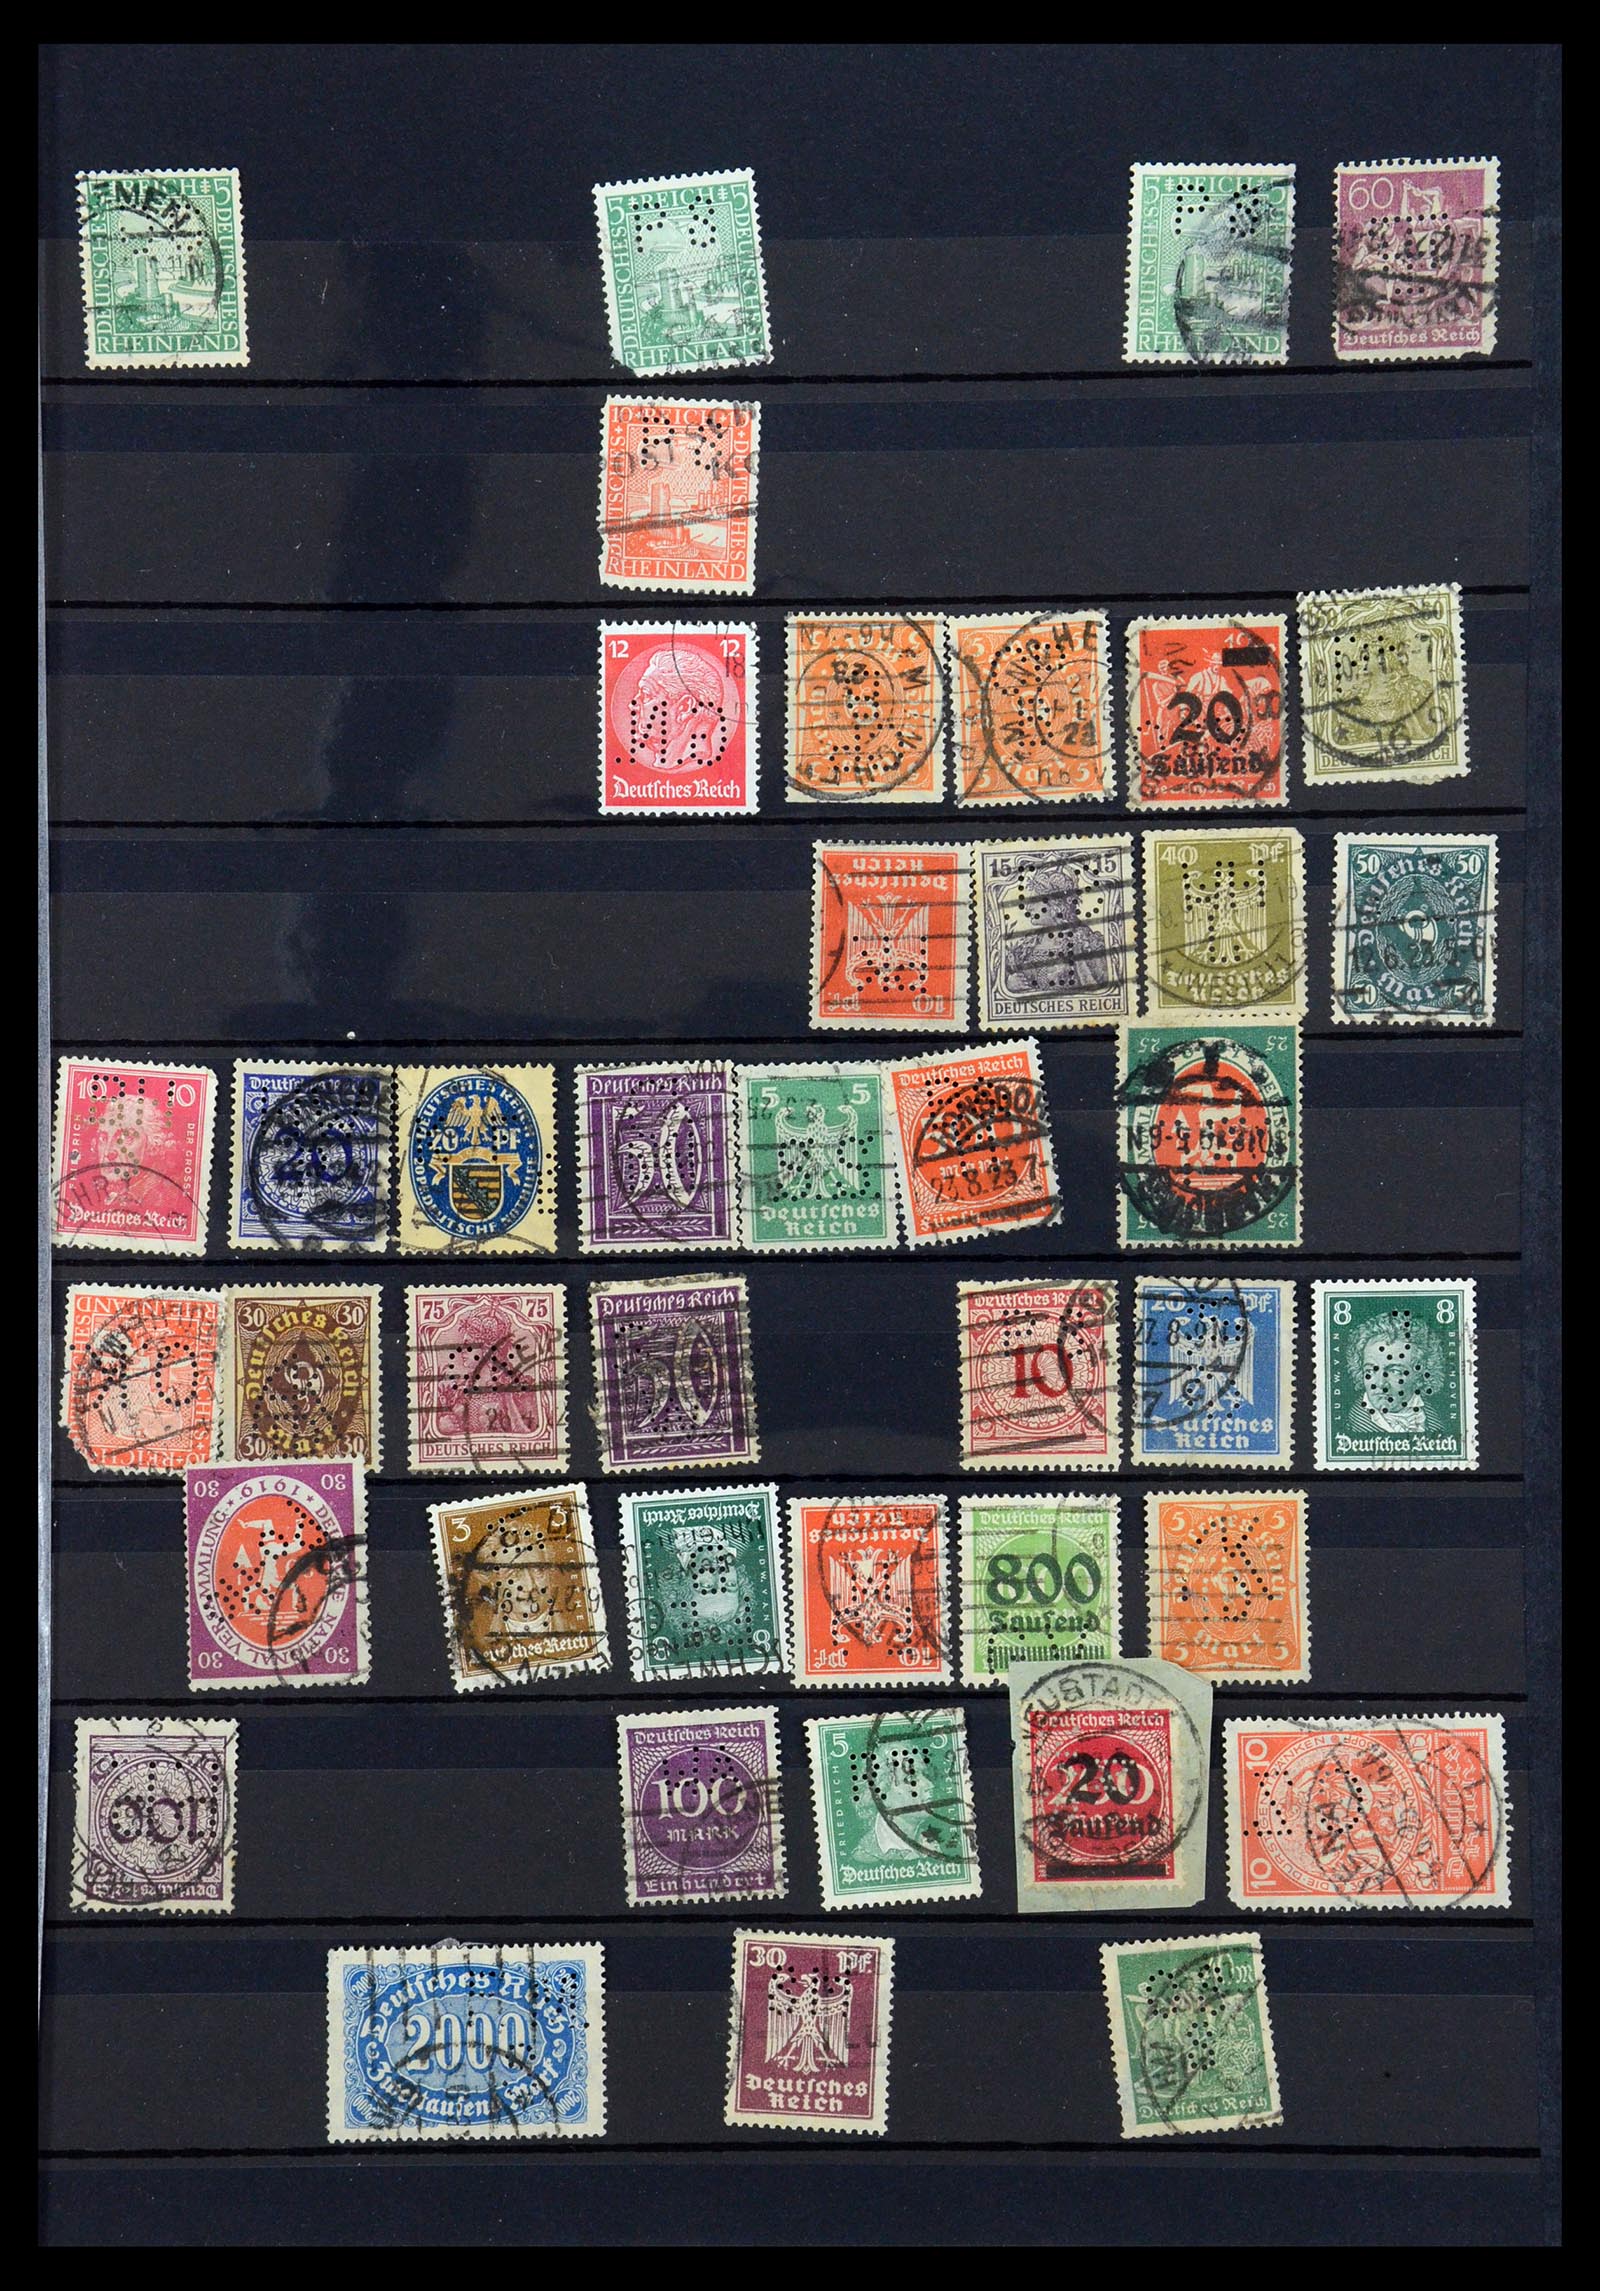 35183 033 - Stamp Collection 35183 German Reich perfins 1880-1945.